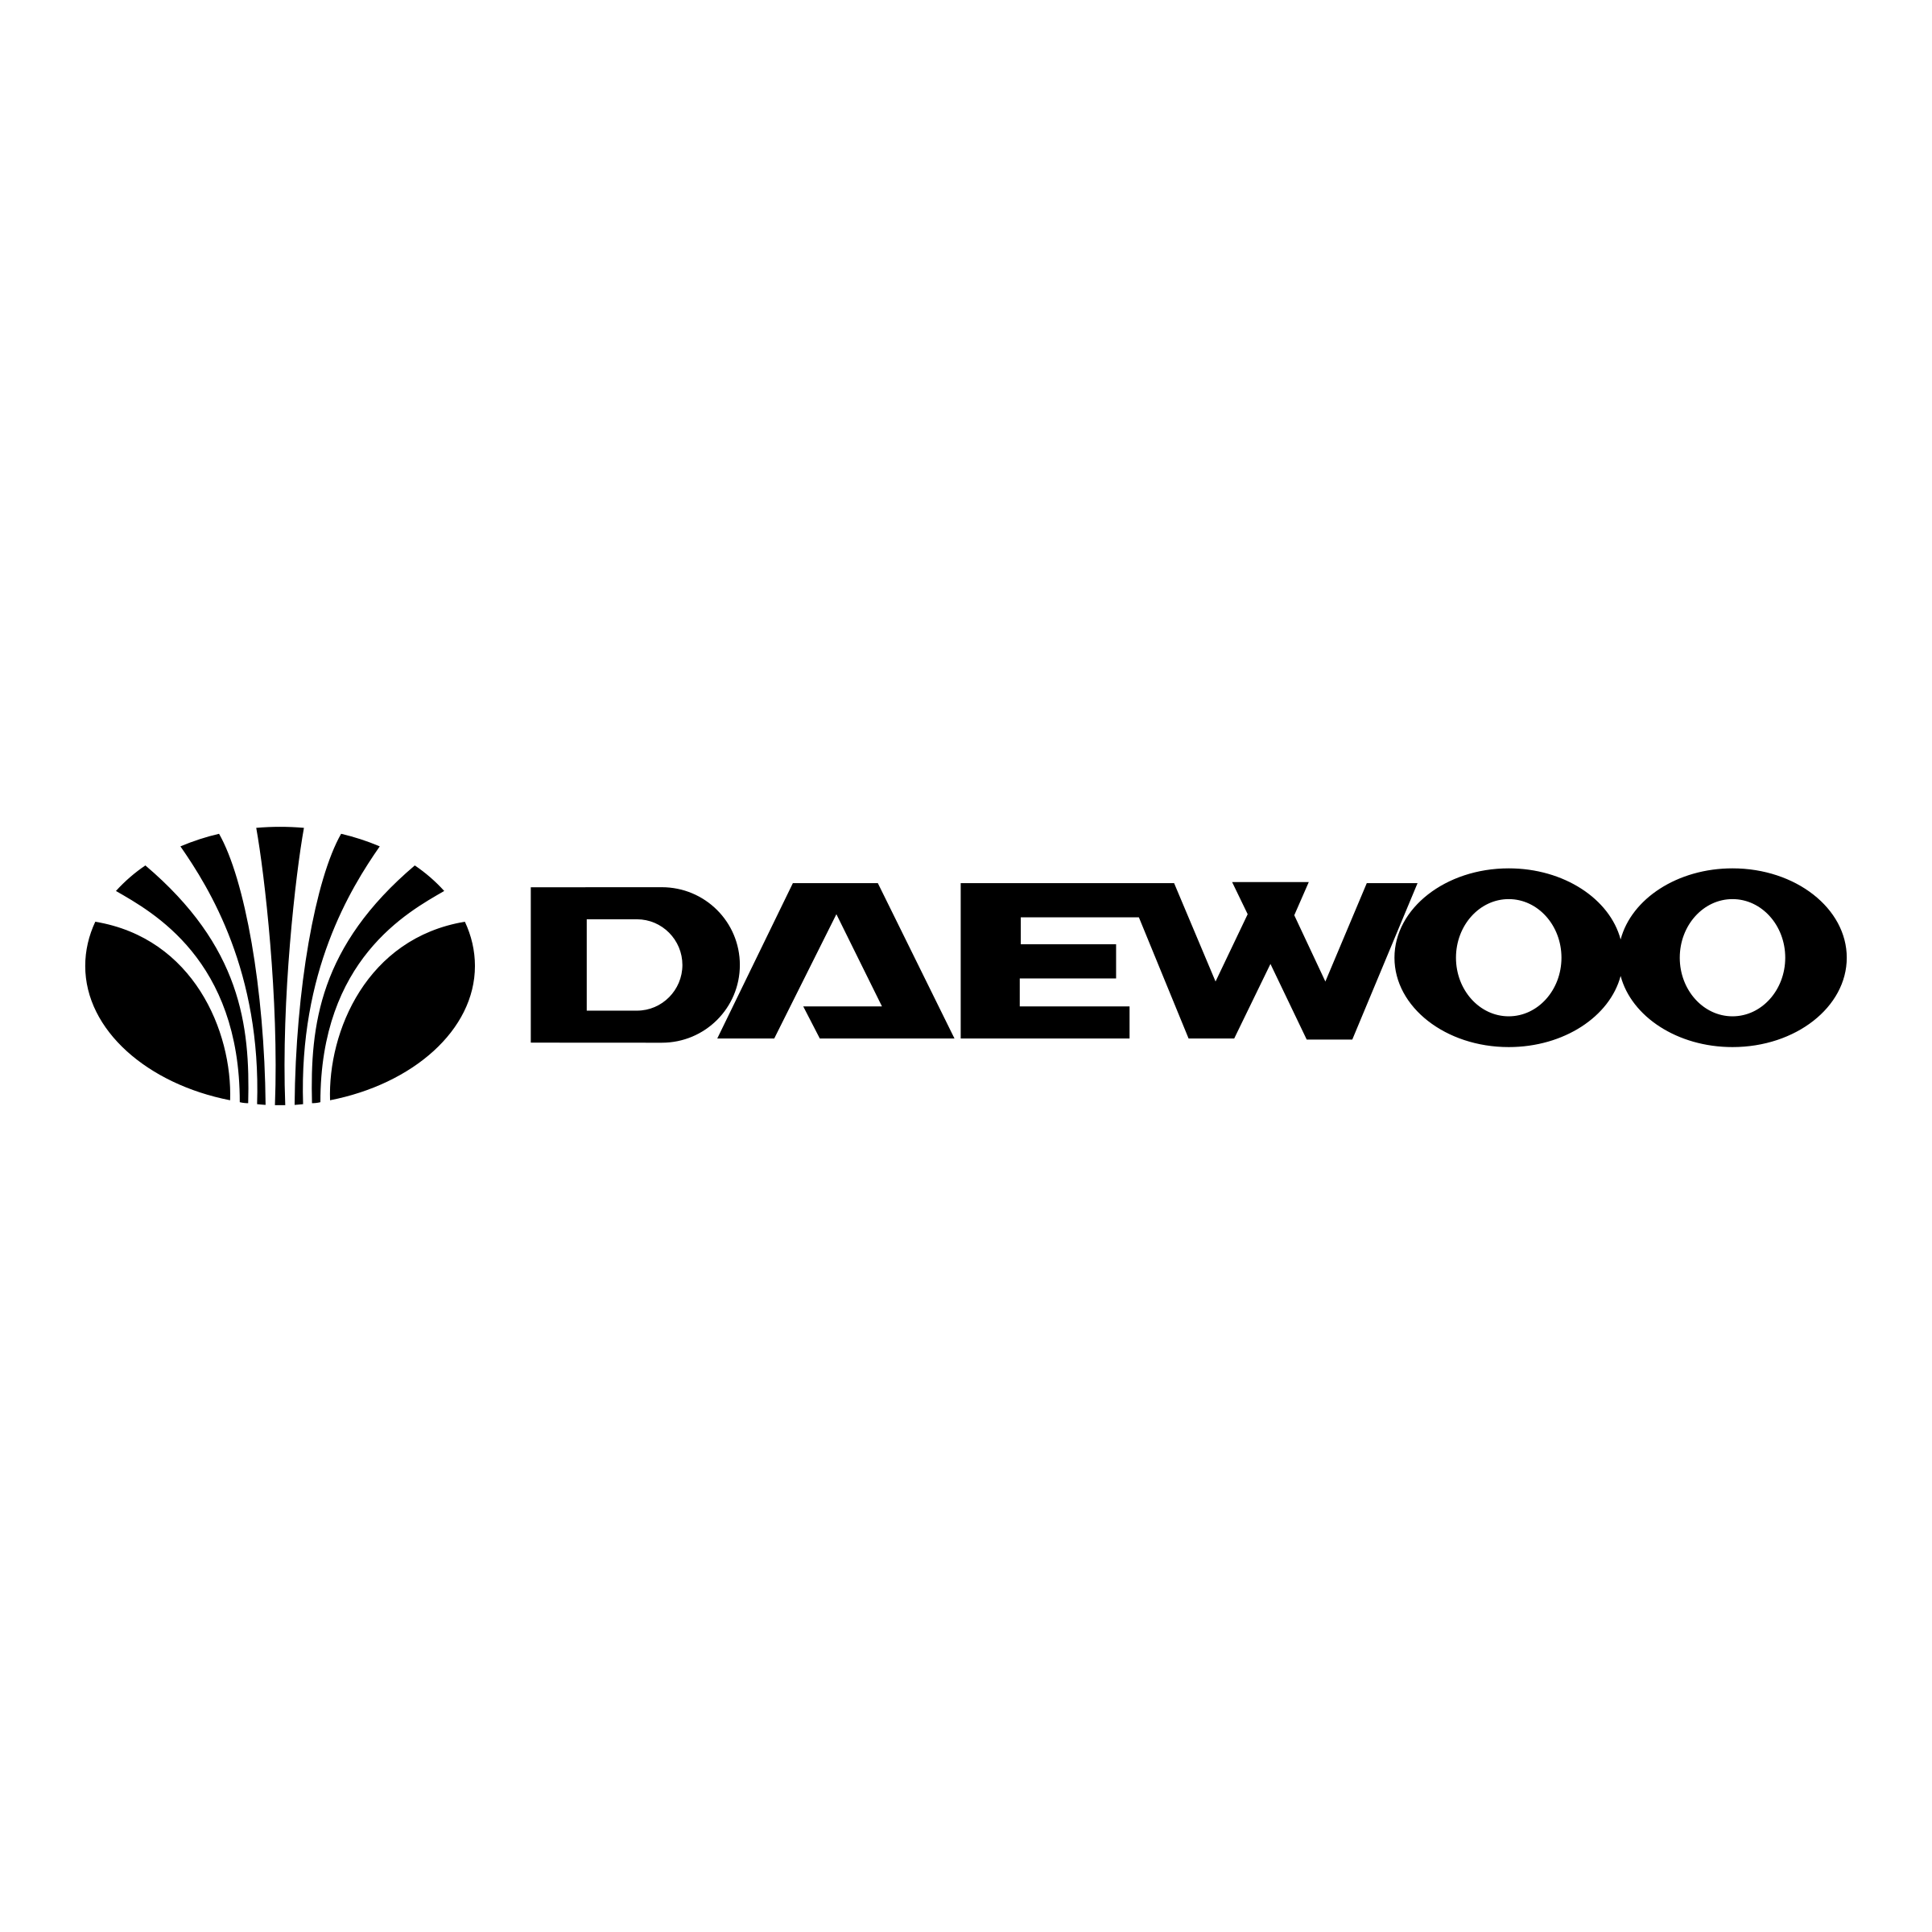 Uz-Daewoo Logo - Daewoo cars PNG images free download